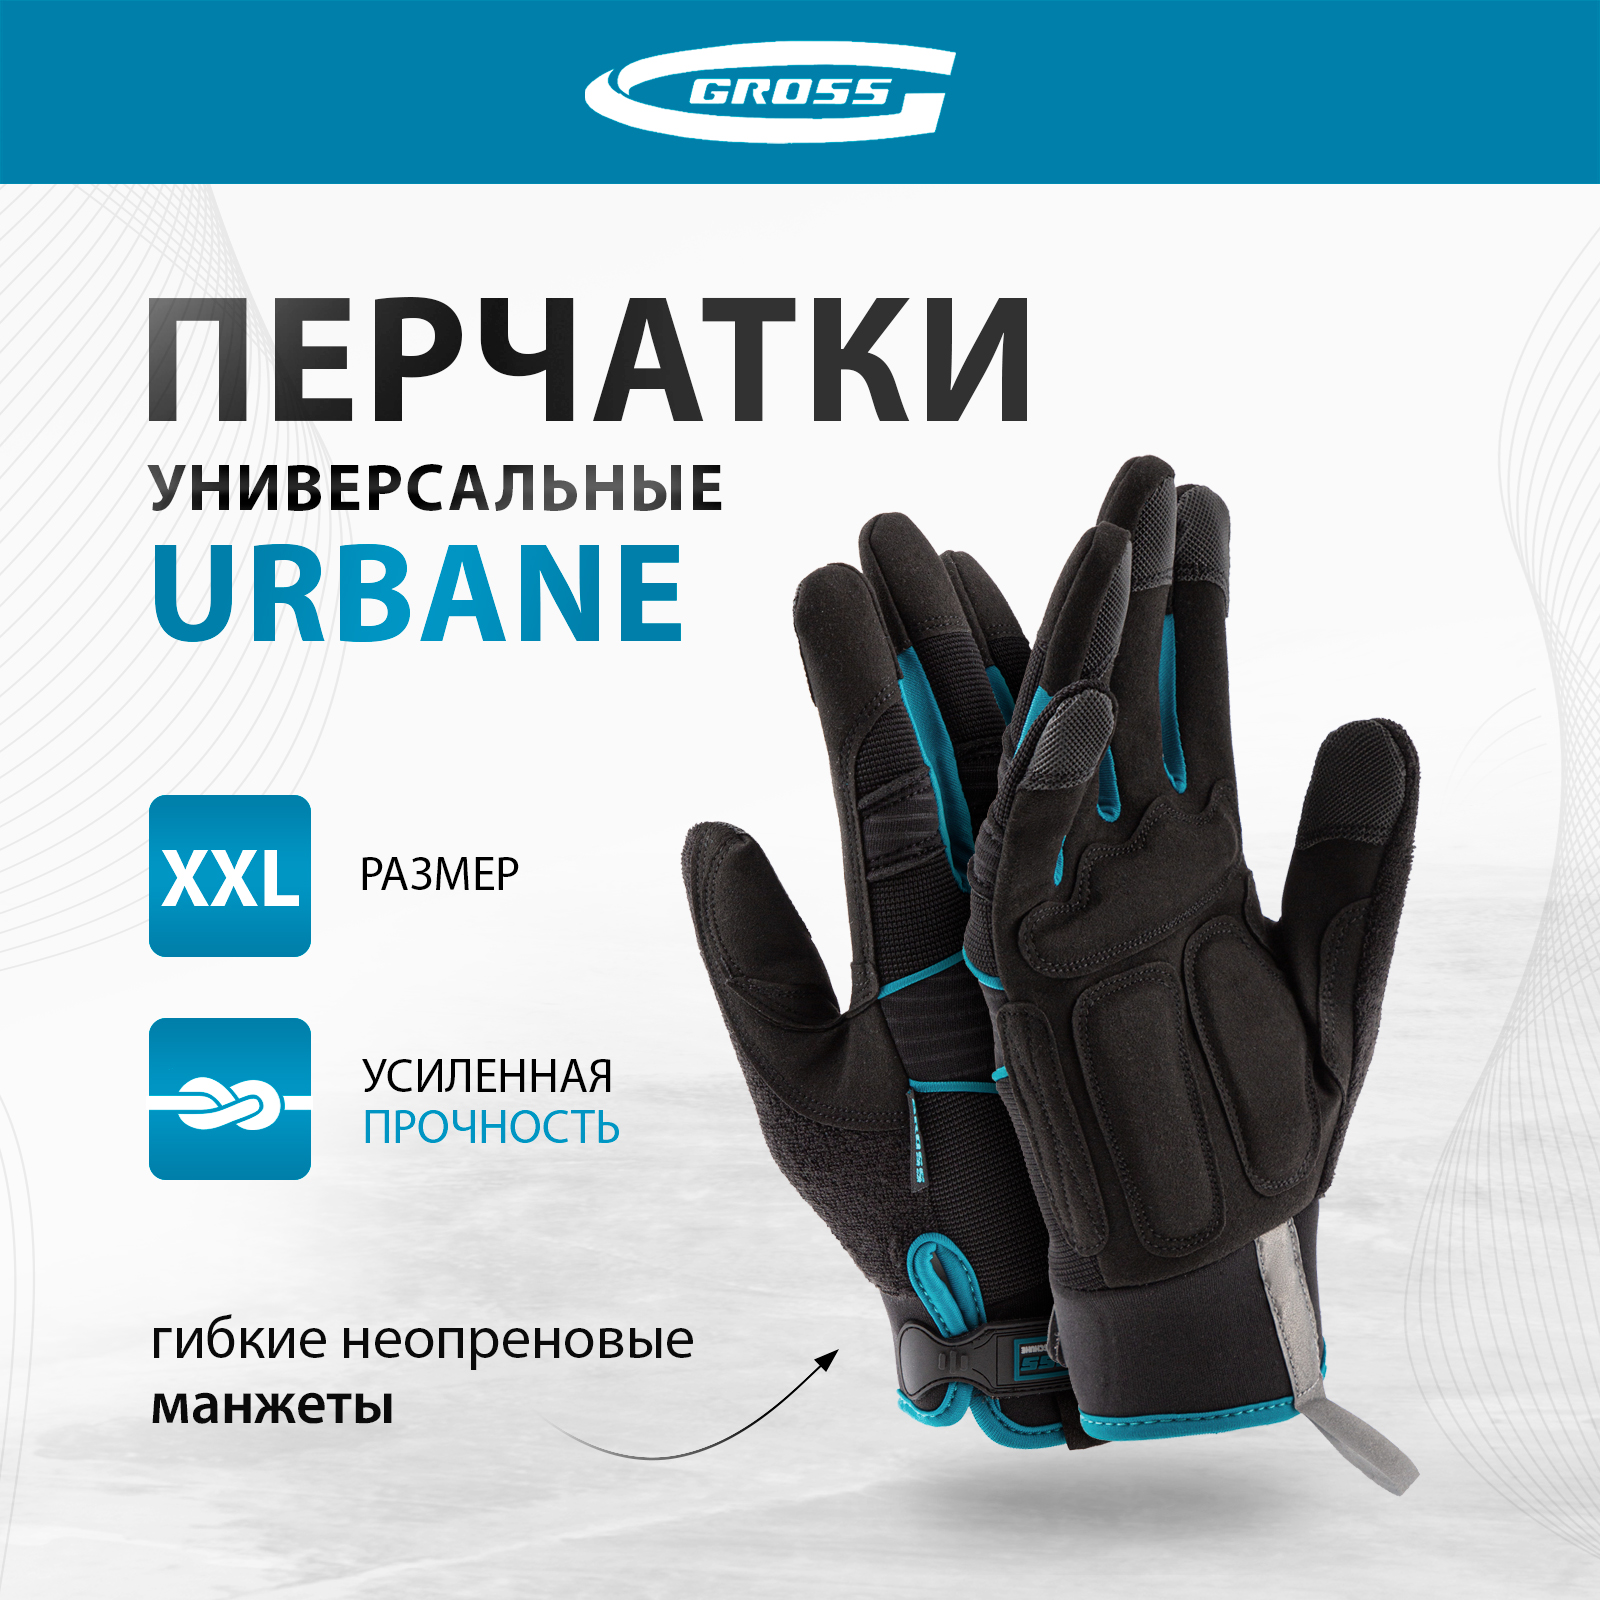 Перчатки универсальные комбинированные GROSS URBANE размер XL (10) 90313